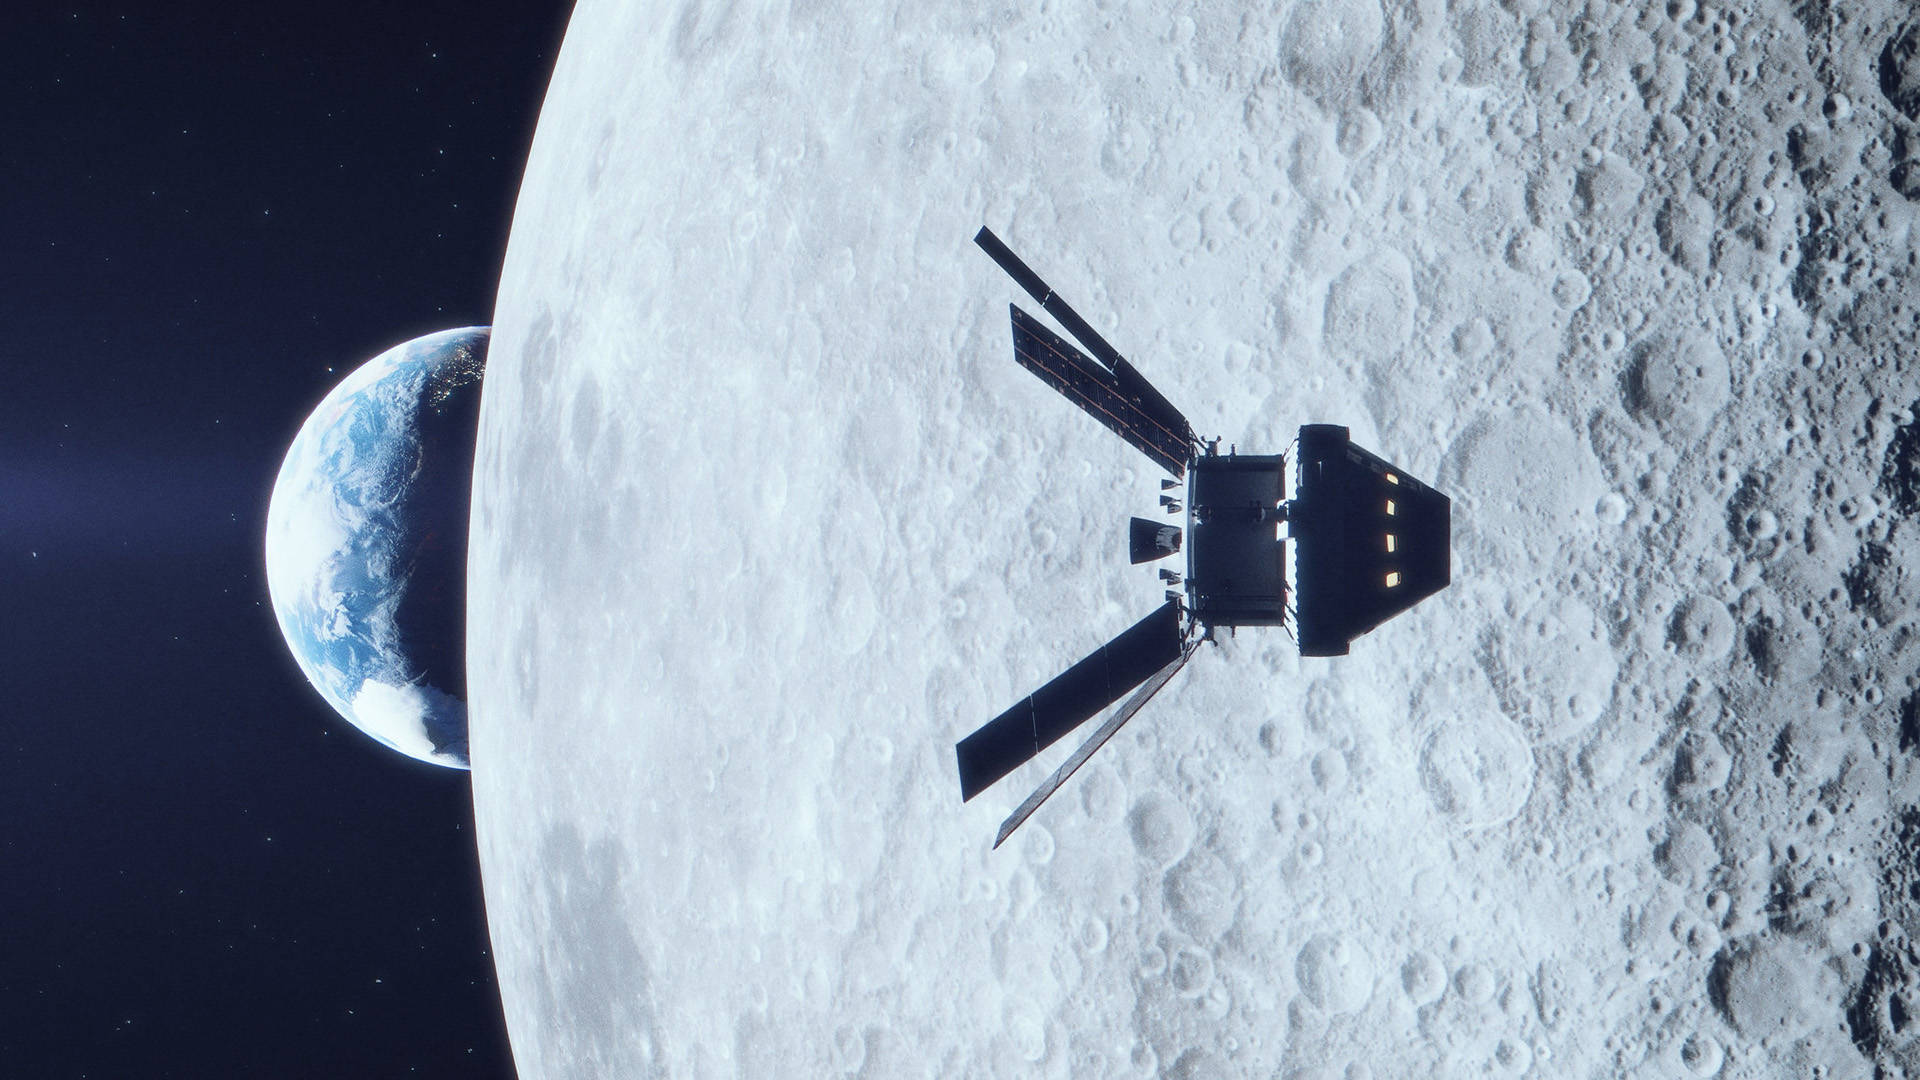 Artemis Mission View 2